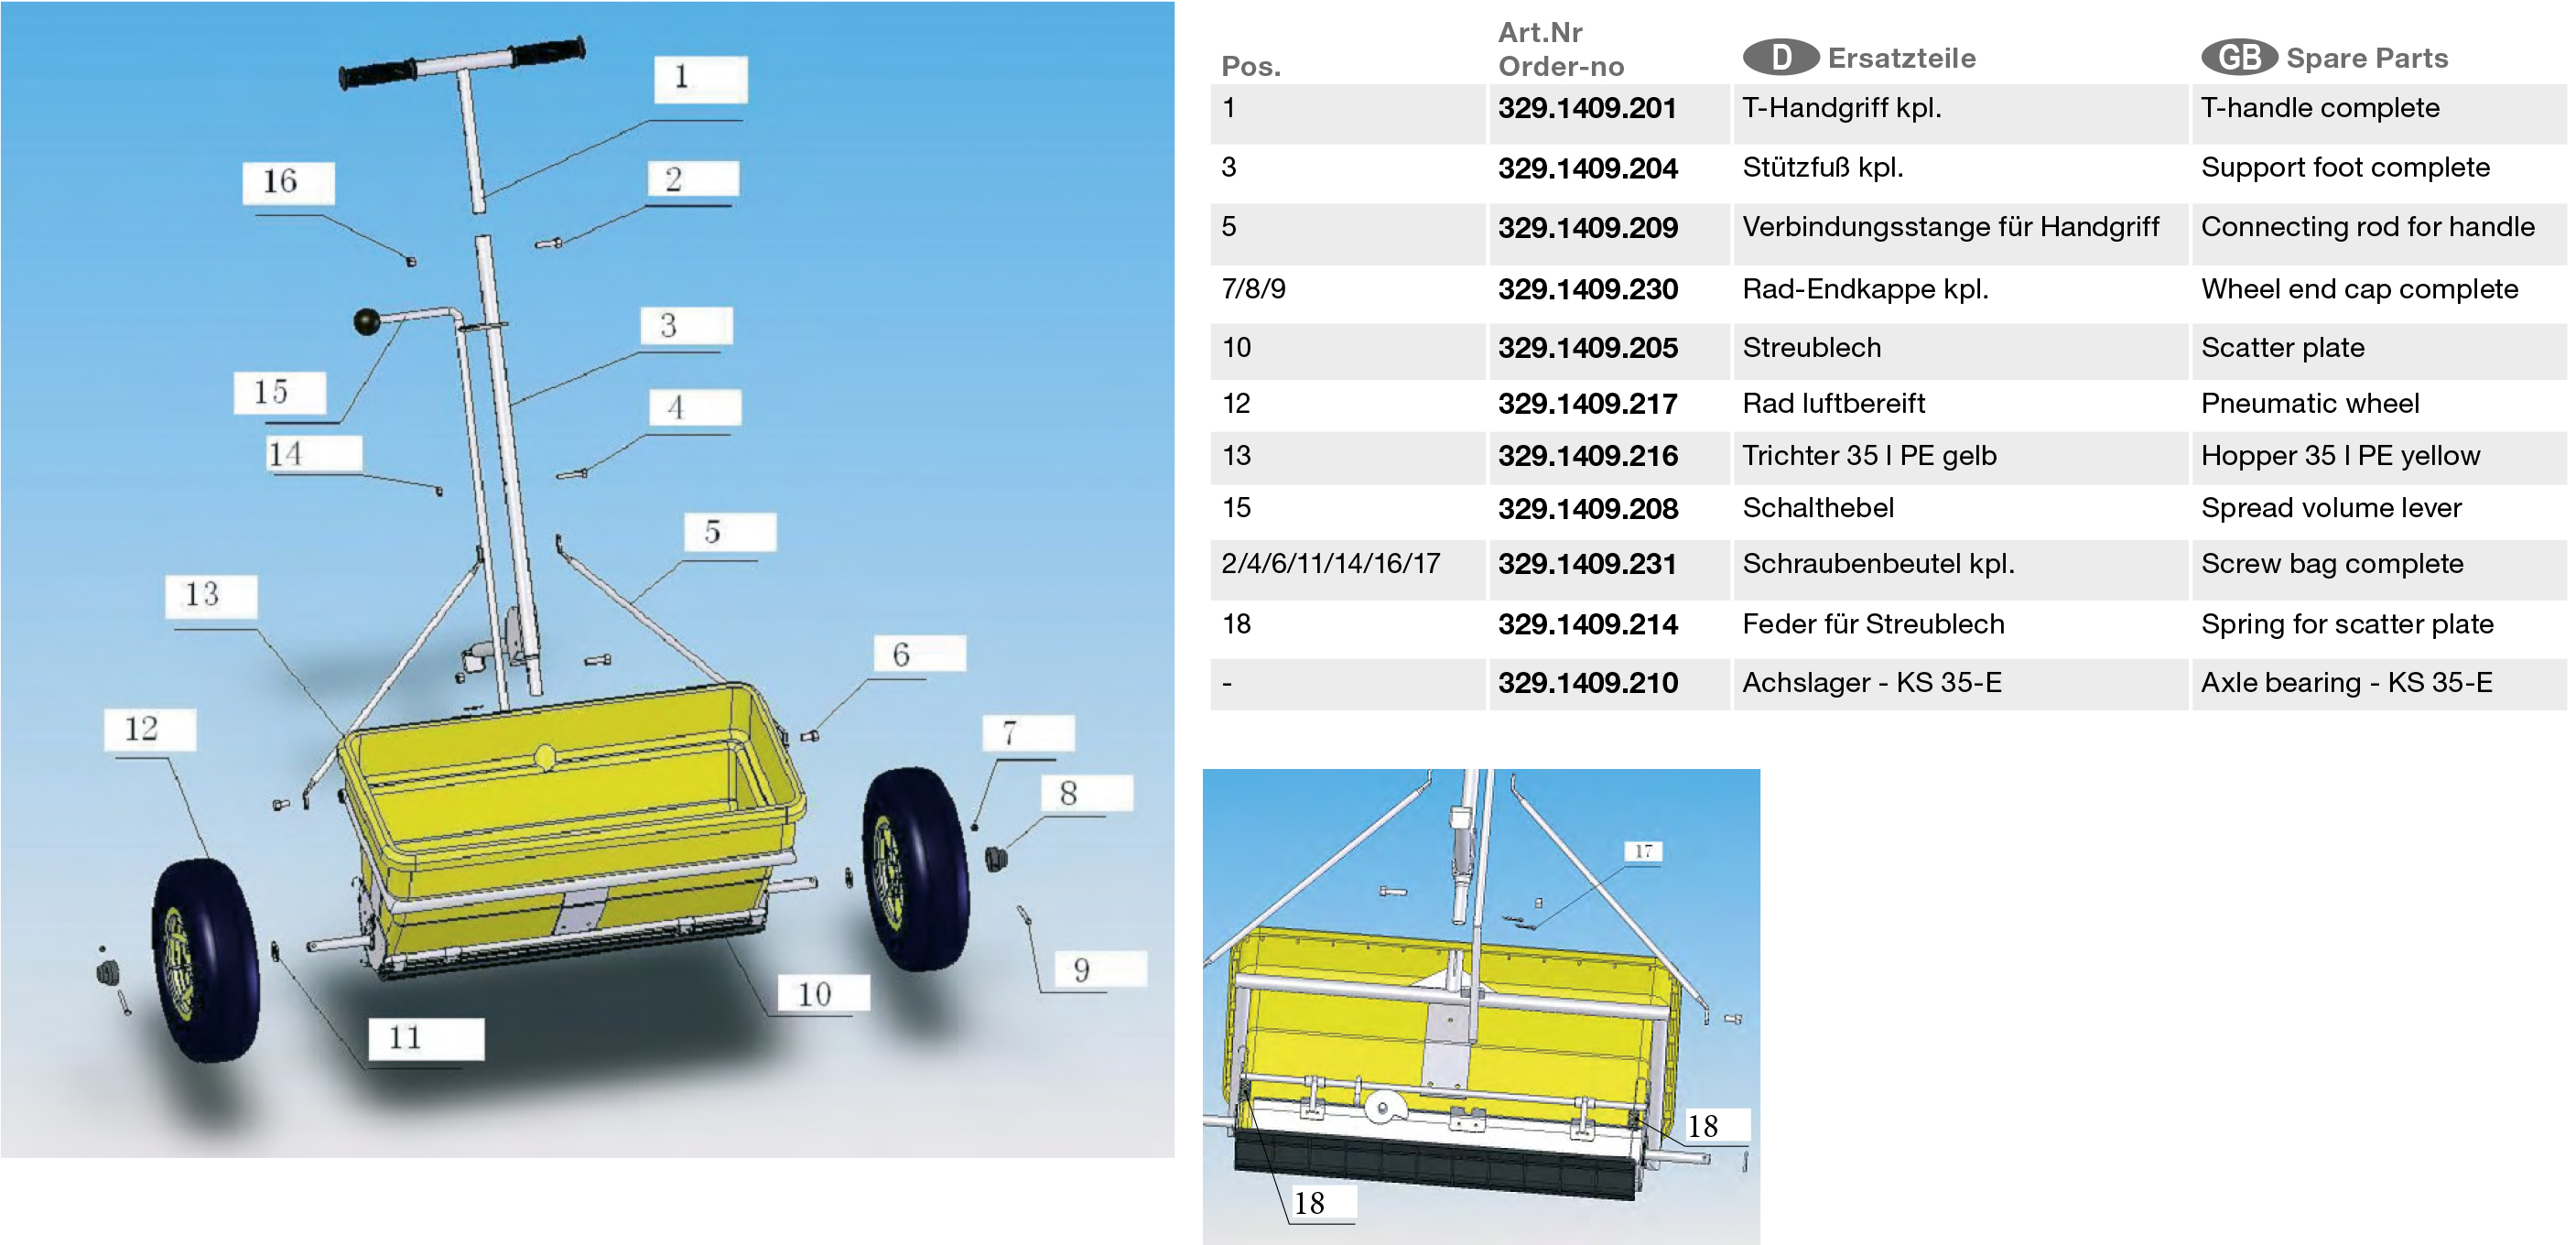 Feder für Streublech Cemo Streuwagen Ersatzteil-Zeichnung Position: 18